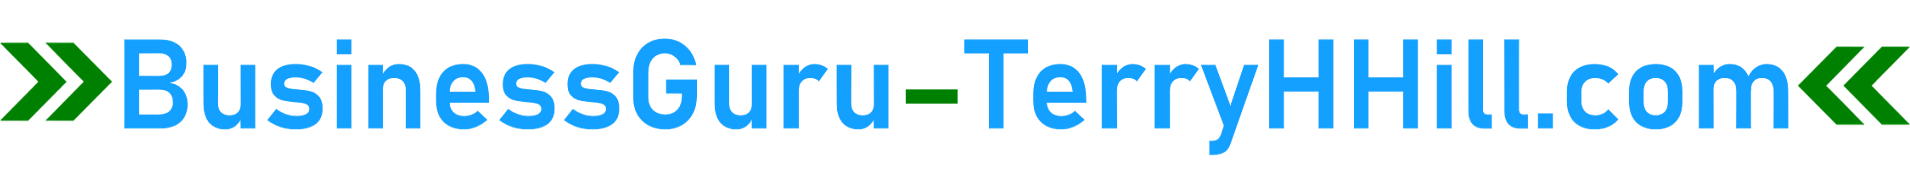 Logo-BusinessGuru-TerryHHill-1